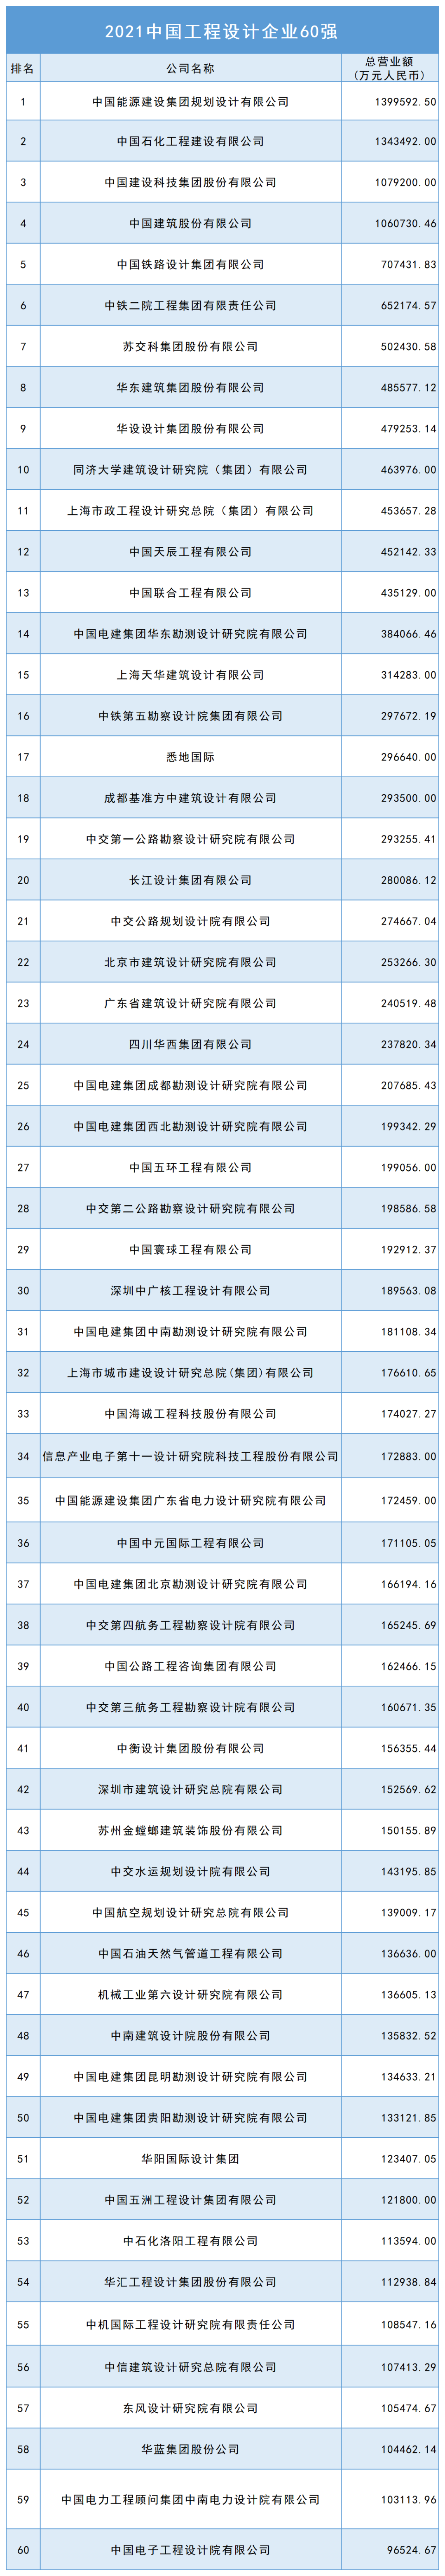 中国承包商80强和工程设计企业60强榜单揭晓 金螳螂喜获丰收